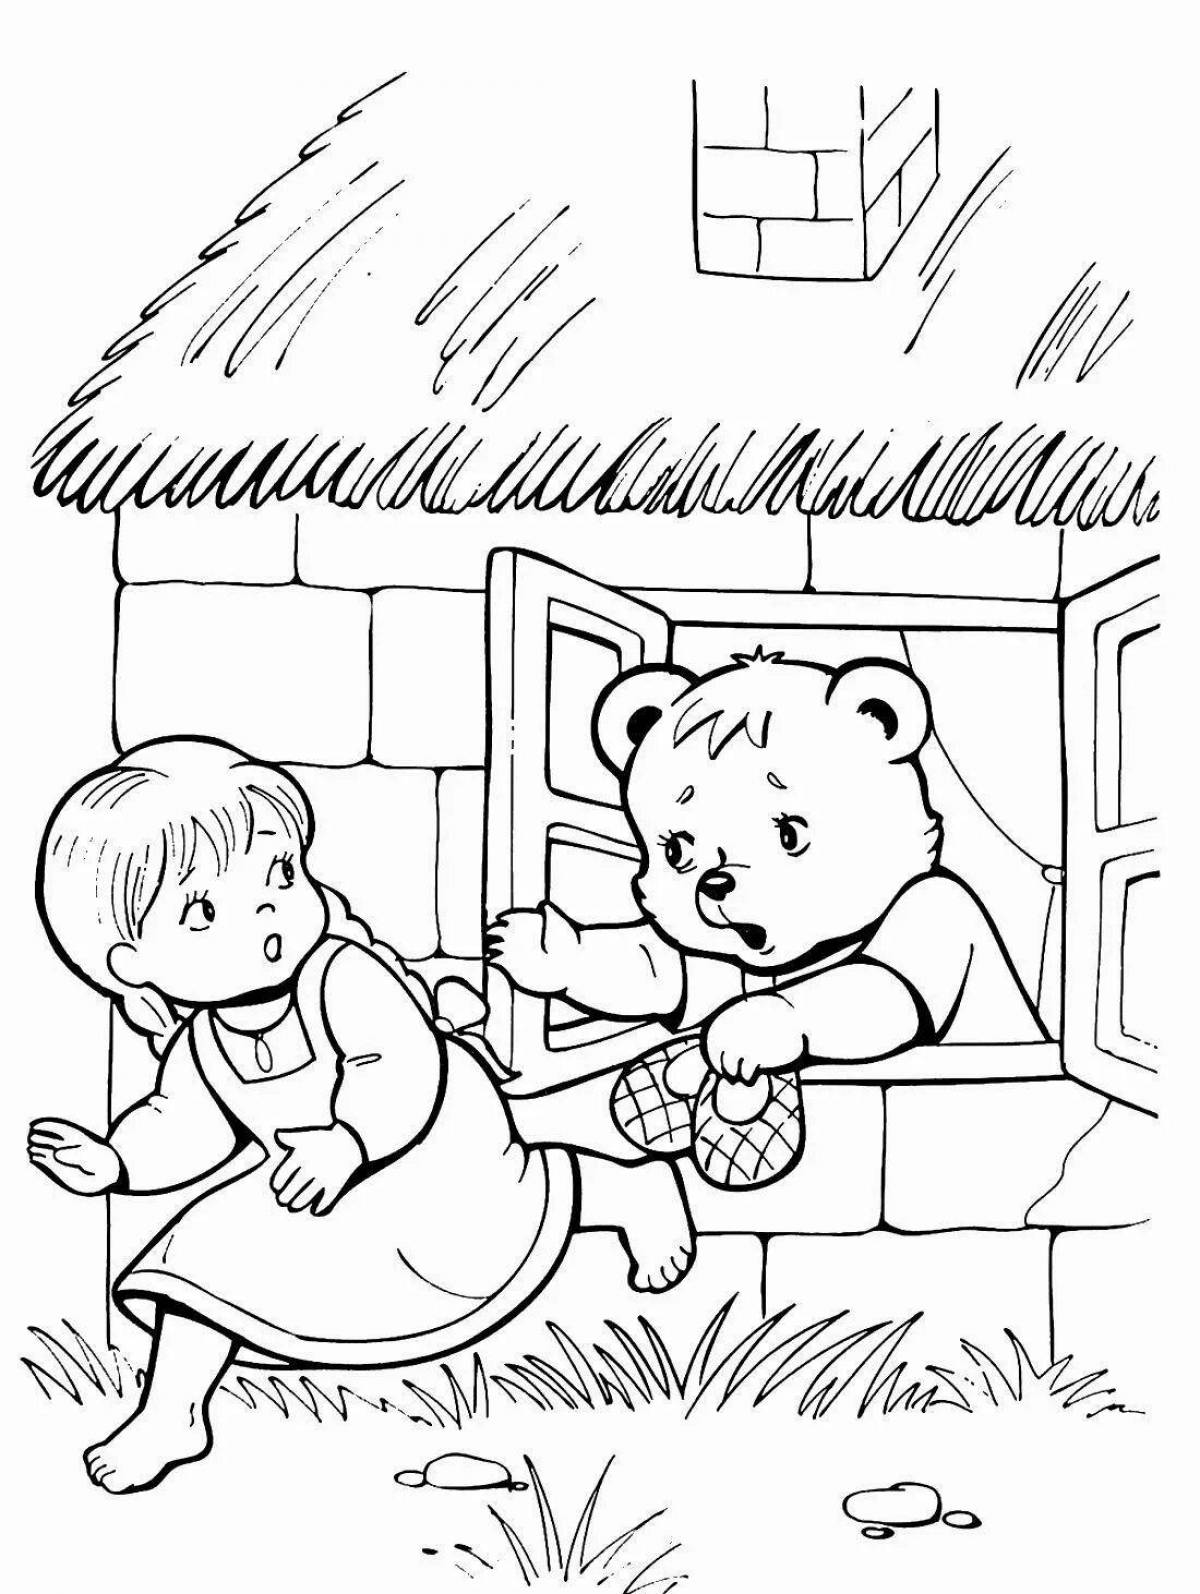 Изысканная раскраска 3 медведя для начинающих